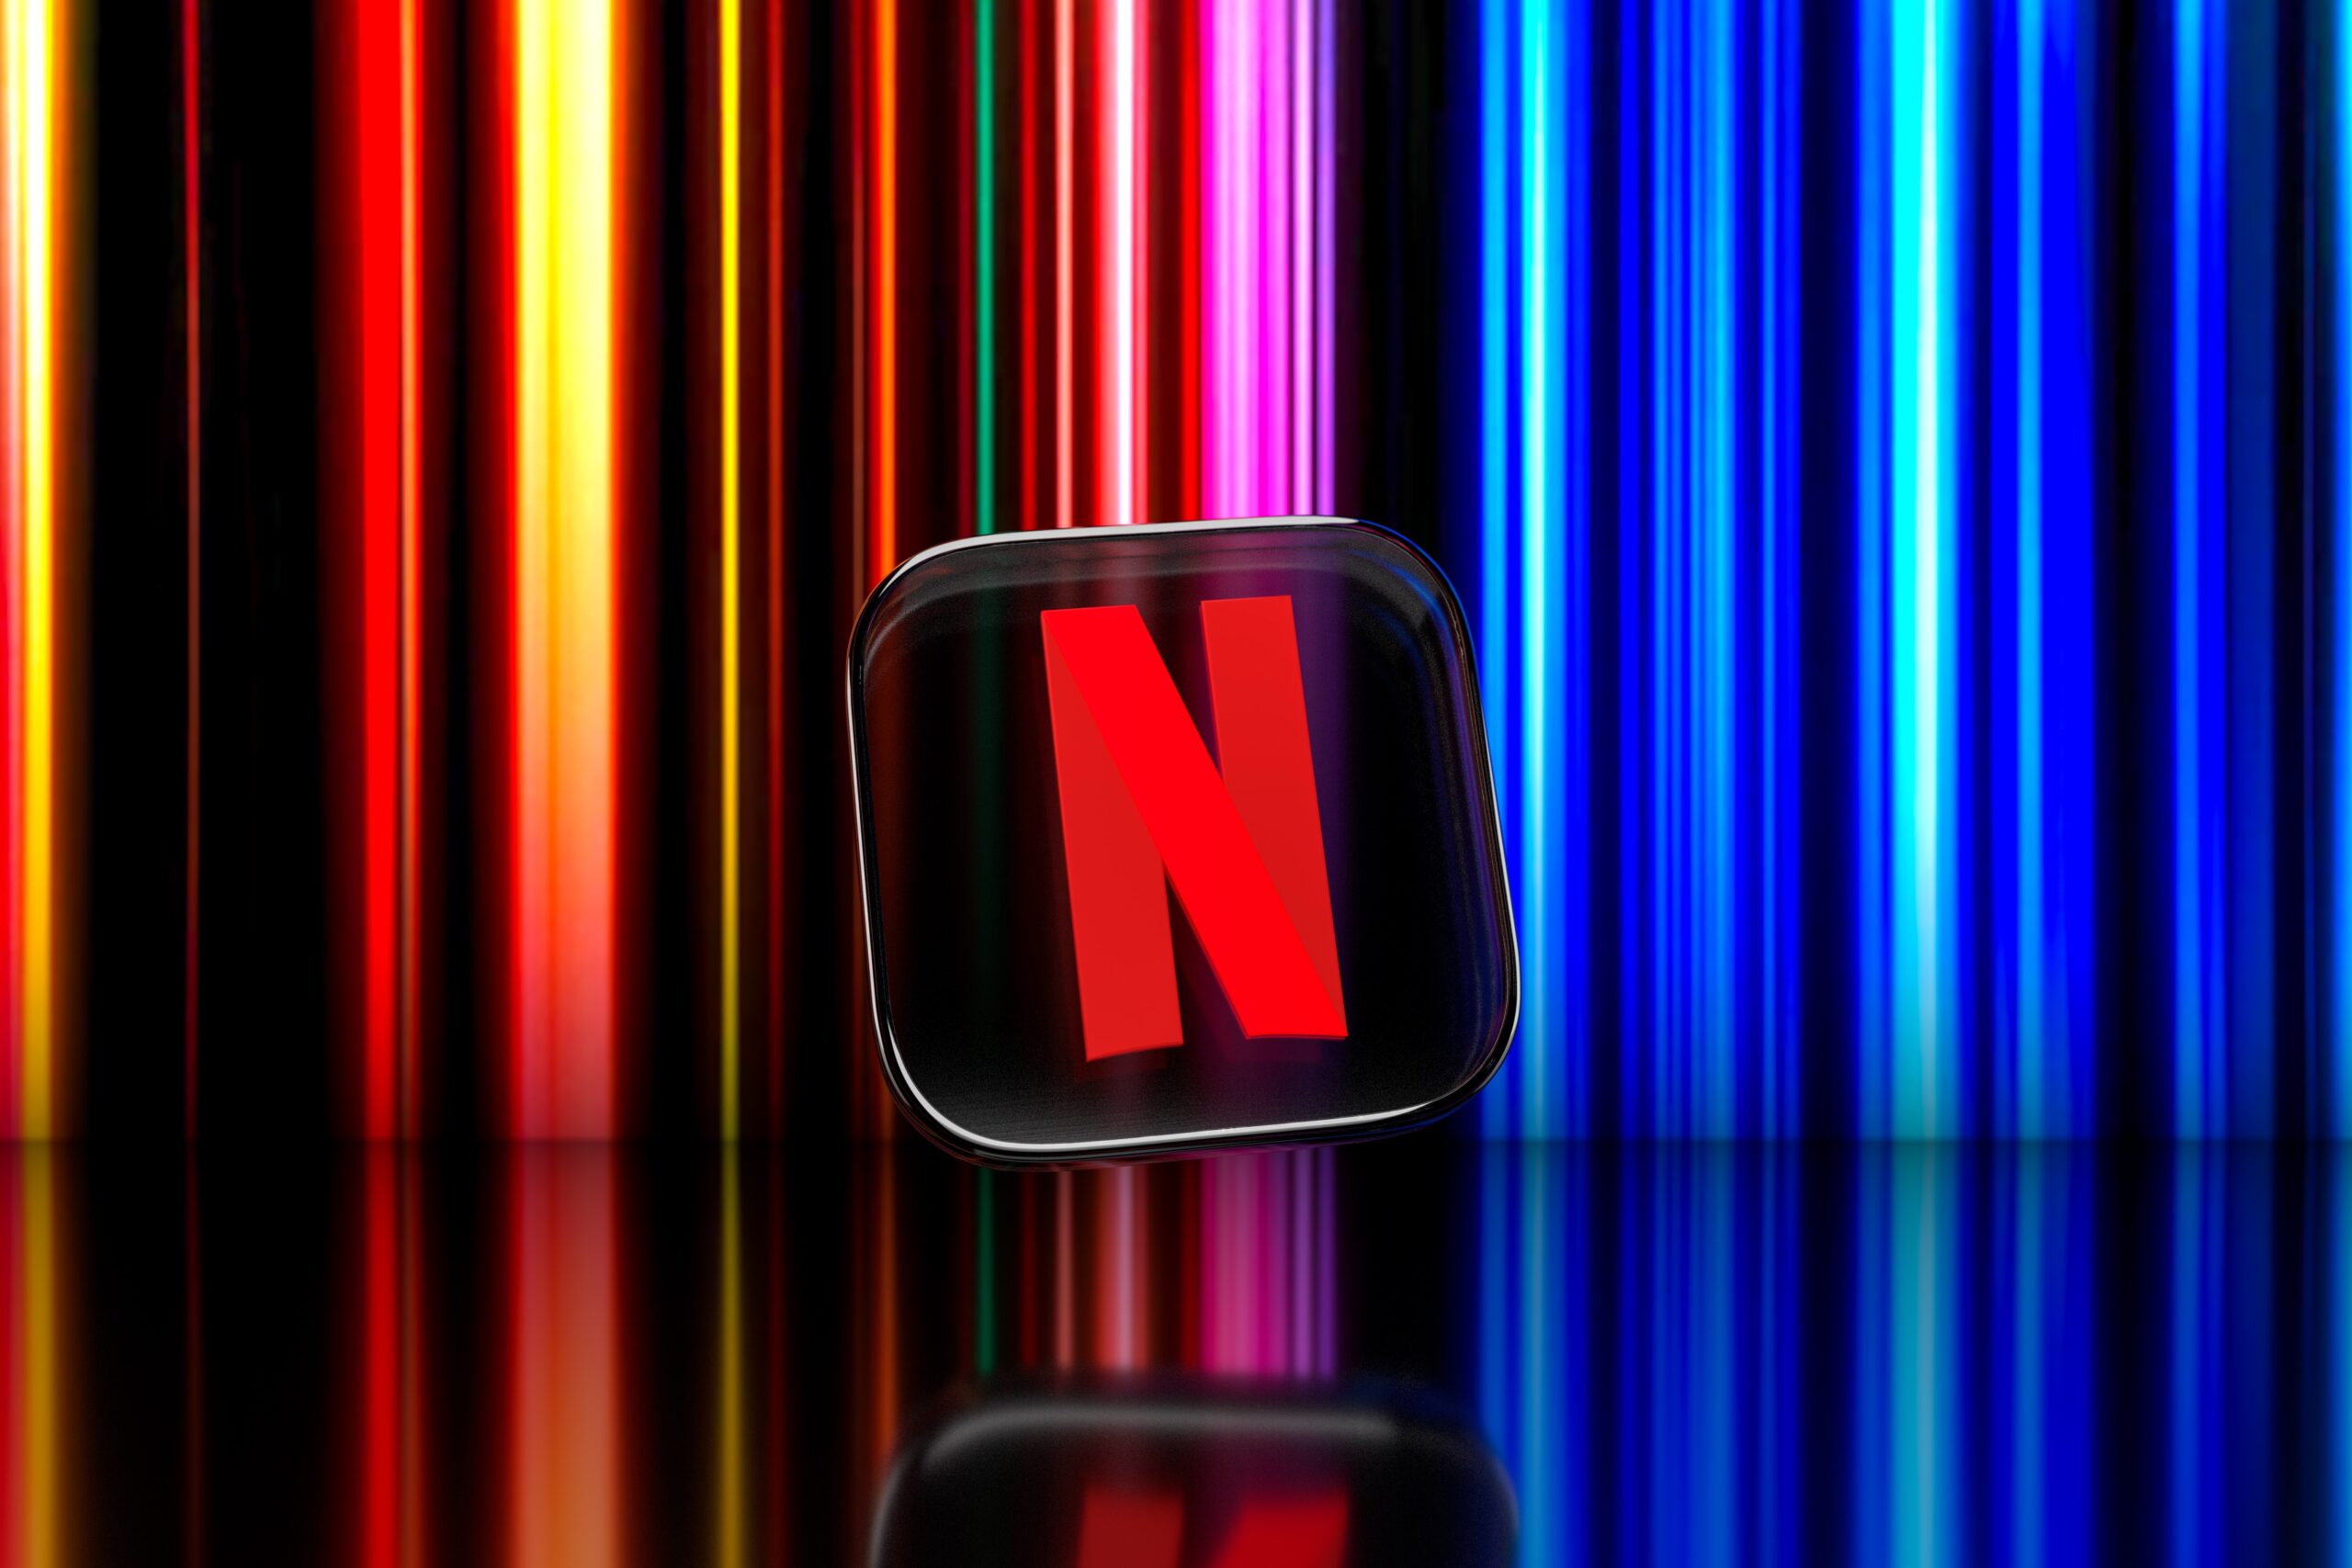 Netflix começa fazer testes de jogos via streaming